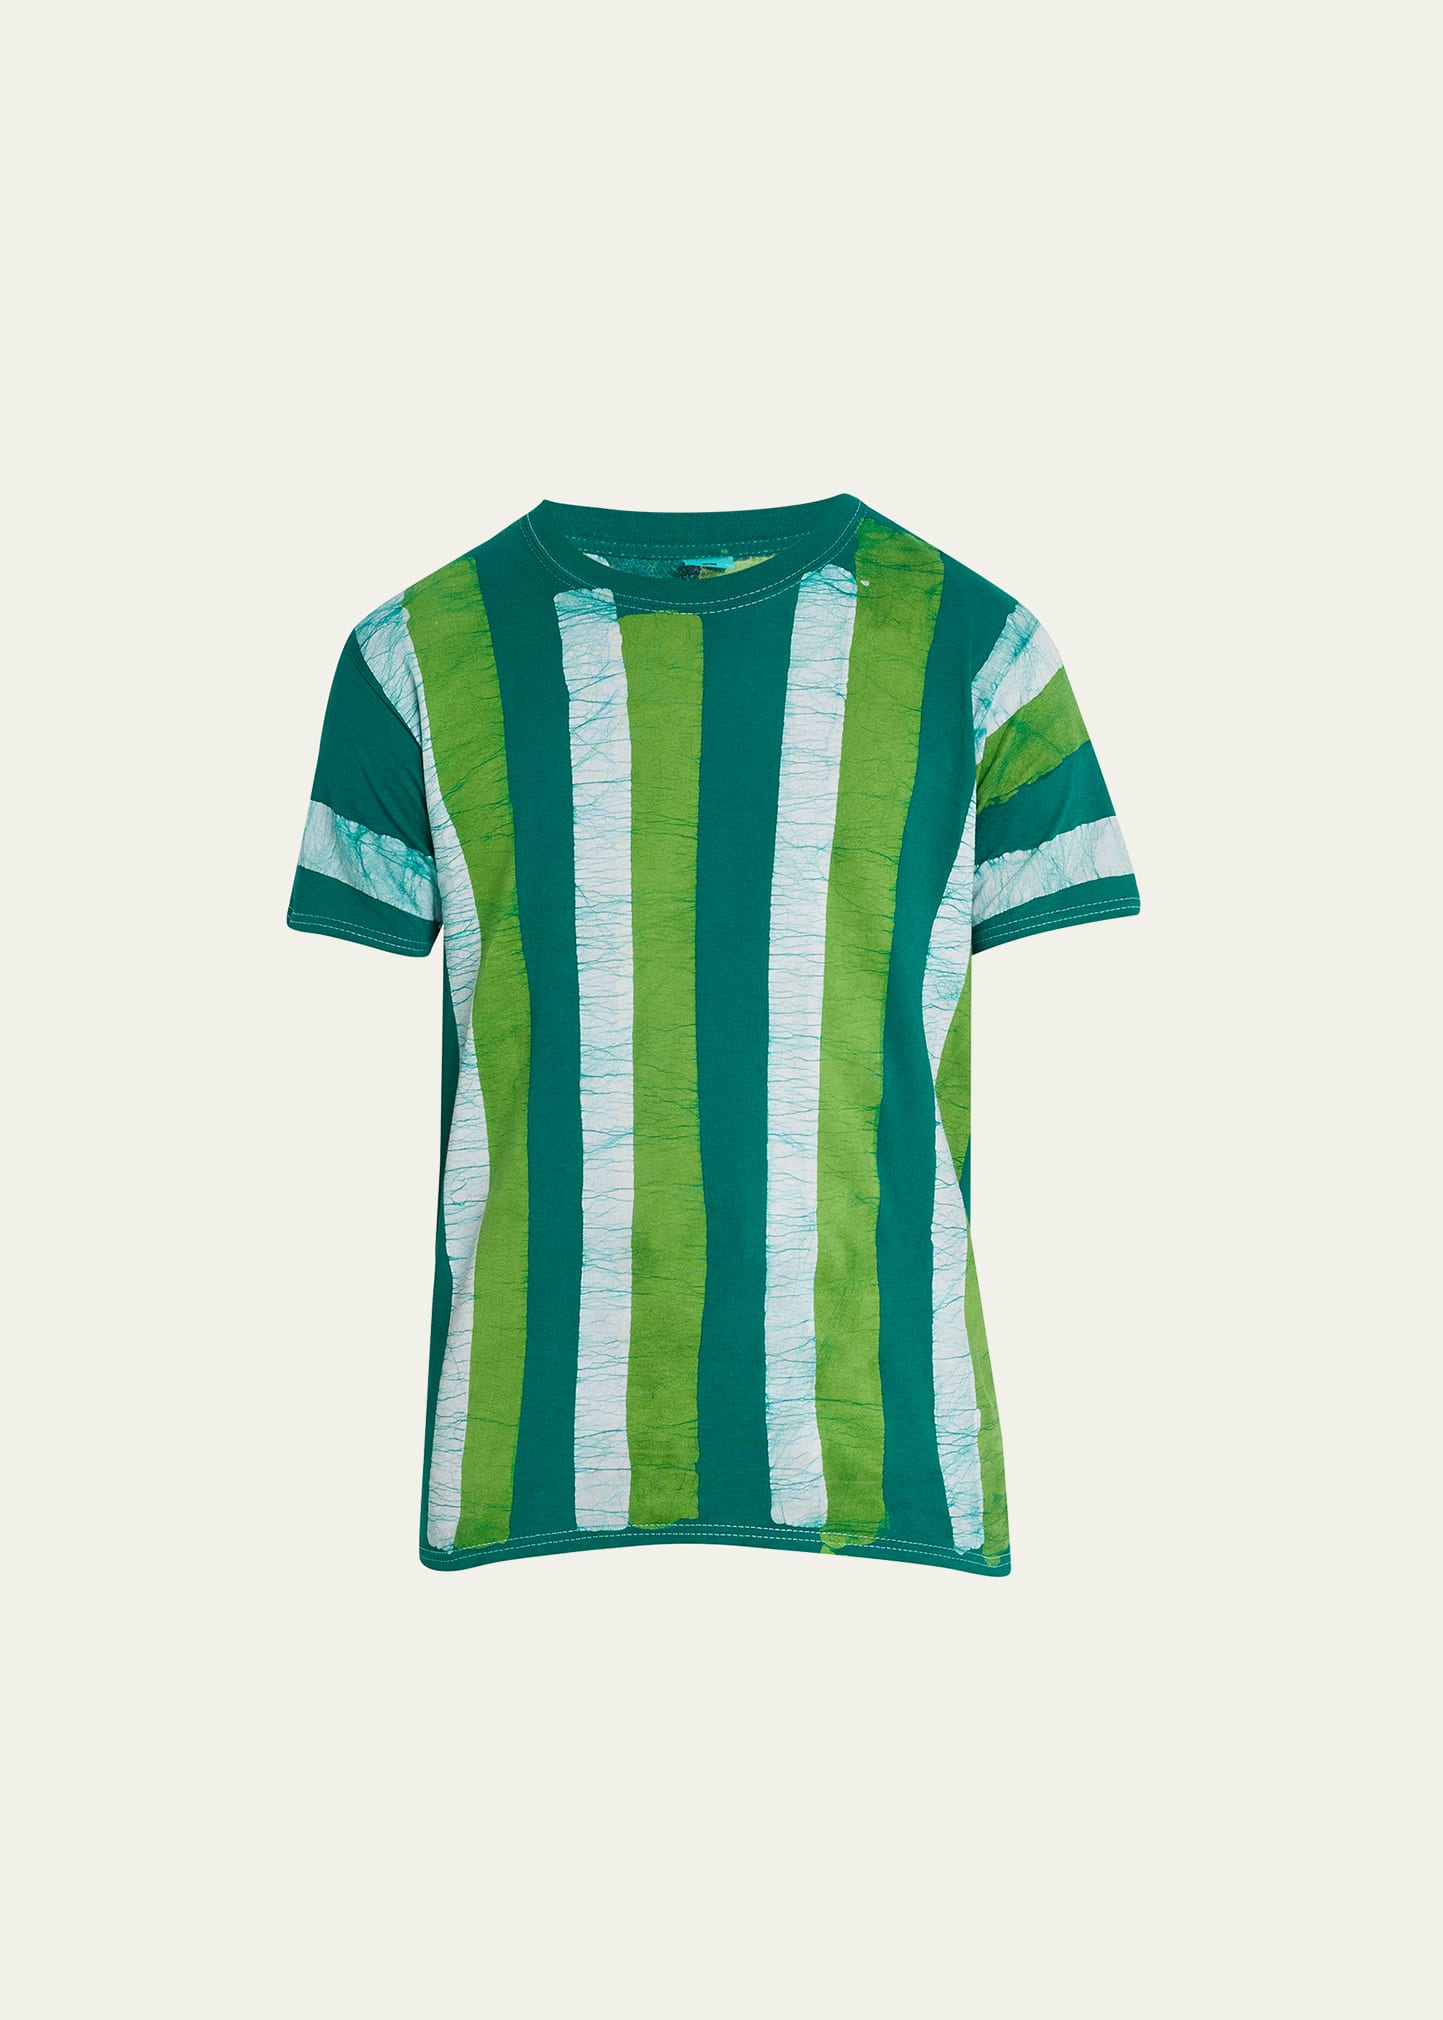 Studio 189 Men's Batik Broad Striped T-shirt In Green